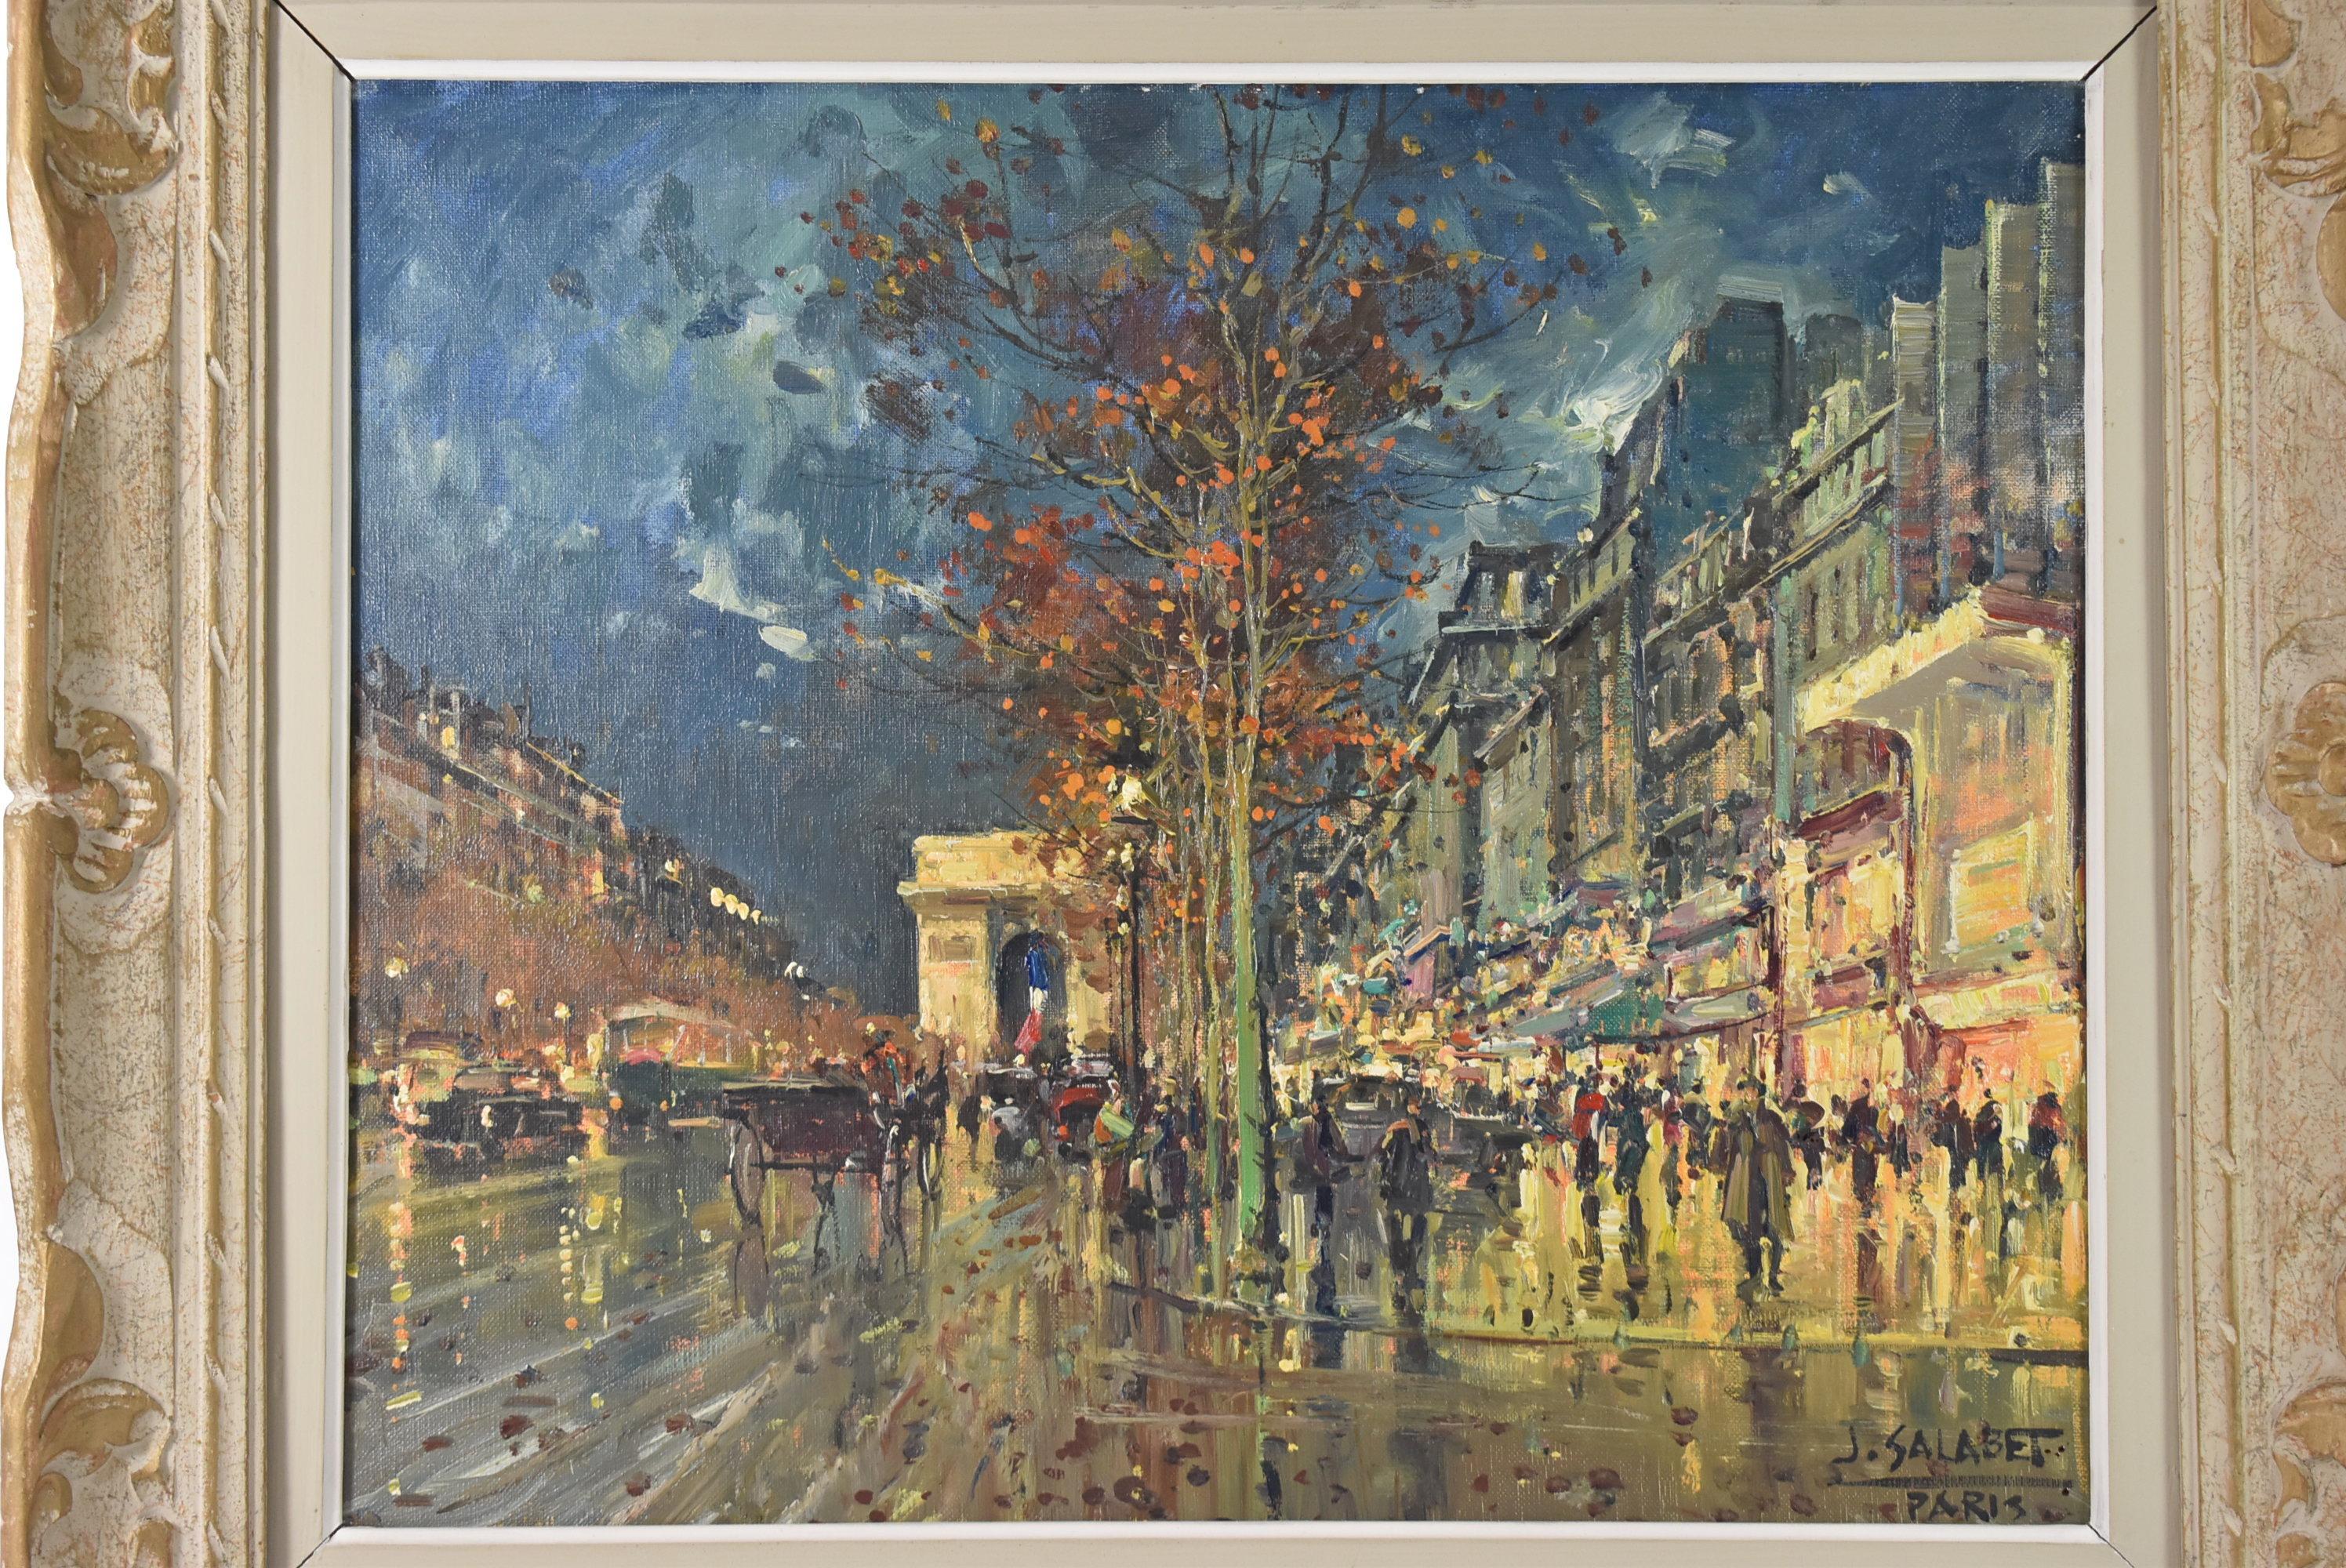 Pintura al óleo sobre lienzo Escena callejera de París, Arco del Triunfo, de Jean Salabet. Circa 1950's. Escena callejera otoñal en París con el Arco del Triunfo al fondo. Una noche lluviosa con calles y aceras mojadas que arrojan reflejos, coches,